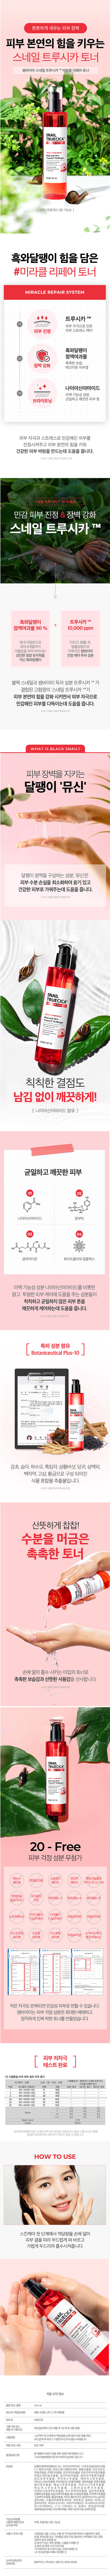 韓國 臉部保養 化妝水 臉部保養 韓國 化妝水